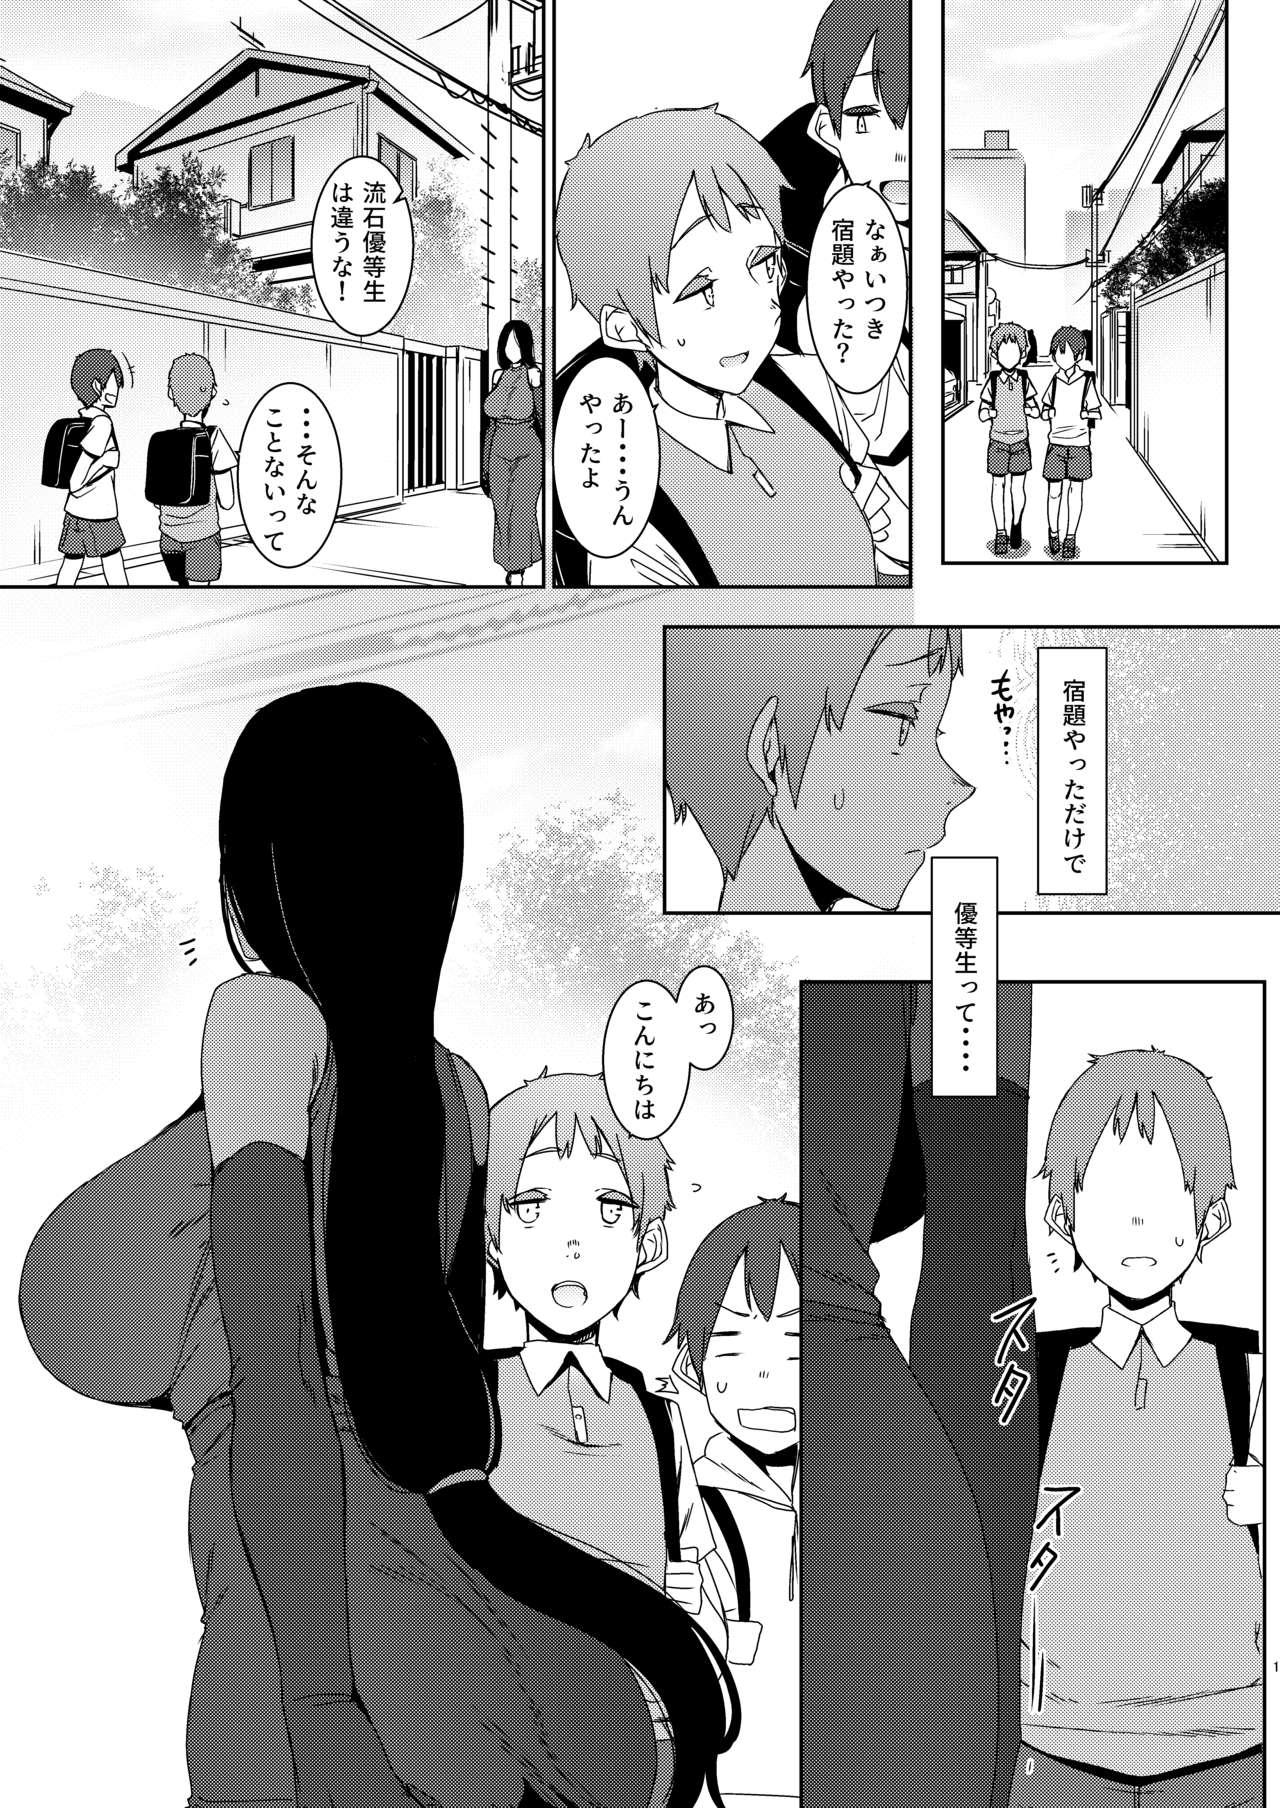 Mofos Douketsu no Mujina - Original Ex Girlfriend - Page 2